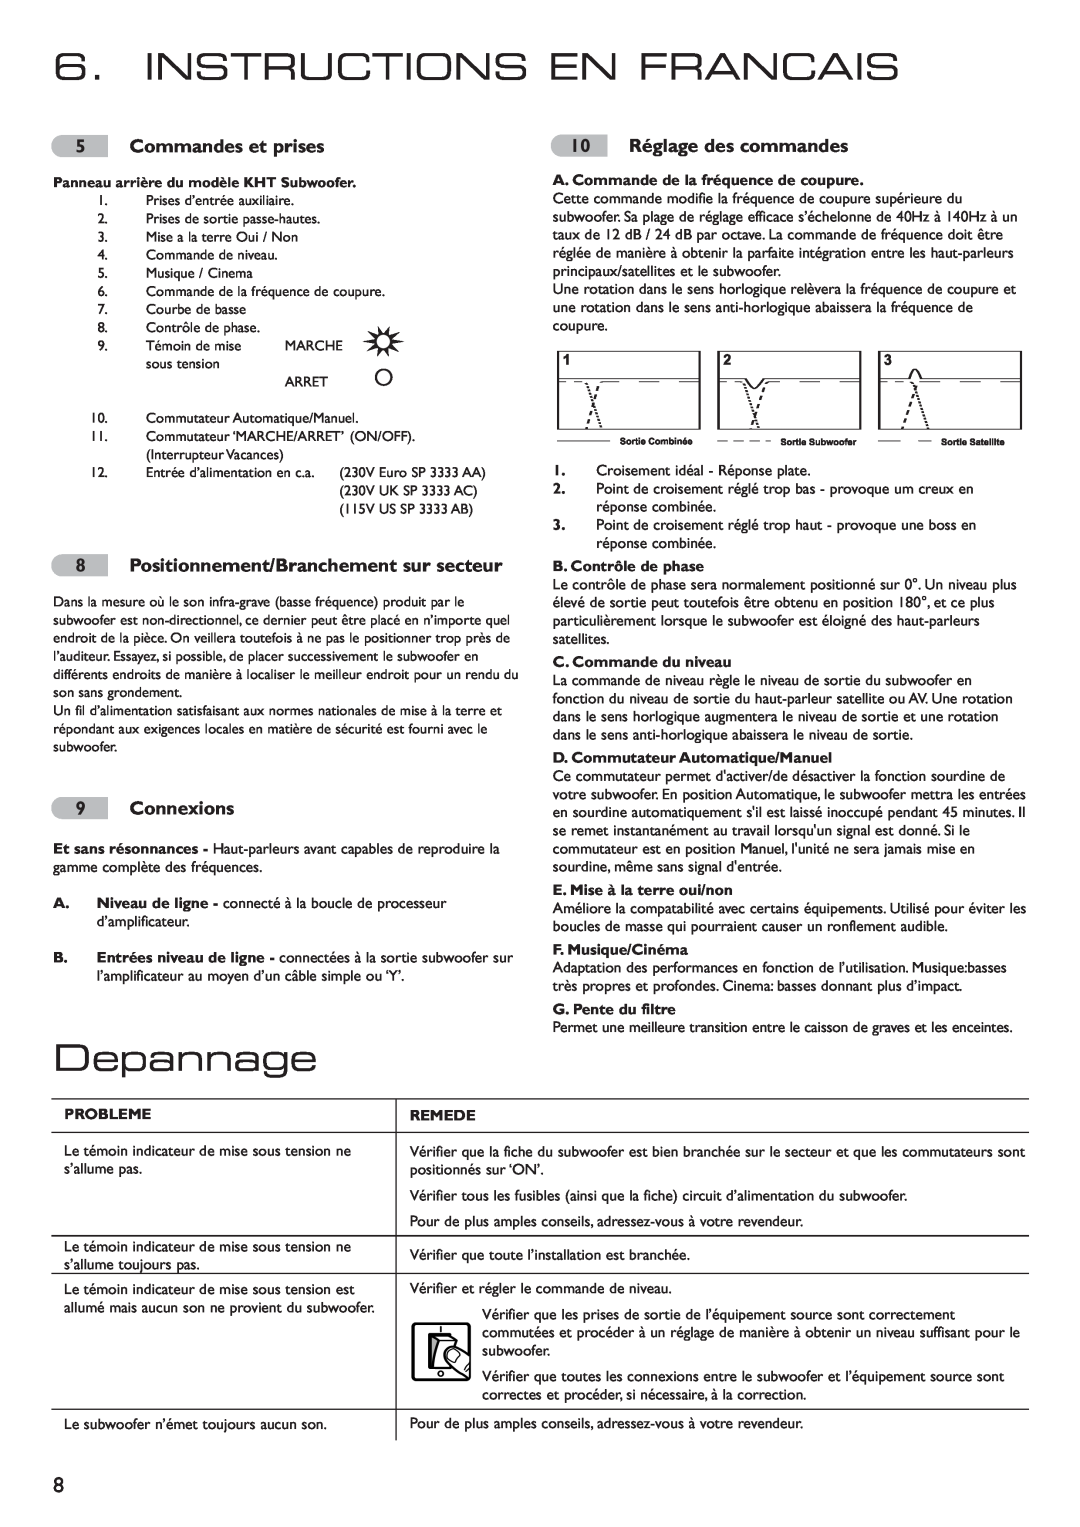 KEF Audio 290149ML Instructions En Francais, Depannage, Commandes et prises, Positionnement/Branchement sur secteur 